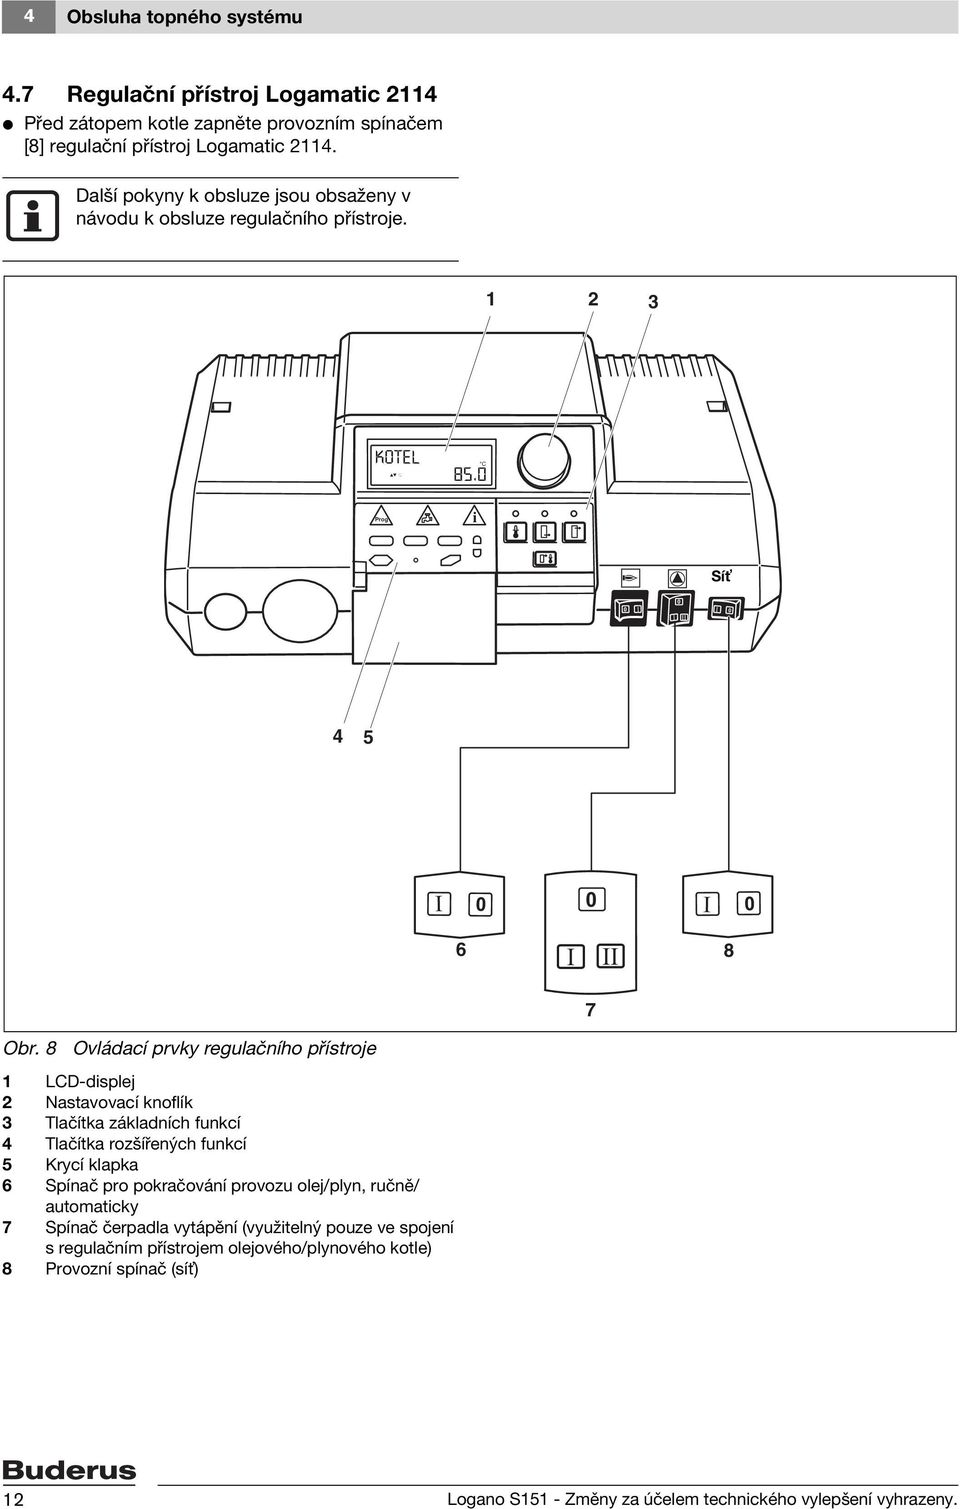 8 Ovládací prvky regulačního přístroje LCD-displej Nastavovací knoflík 3 Tlačítka základních funkcí 4 Tlačítka rozšířených funkcí 5 Krycí klapka 6 Spínač pro pokračování